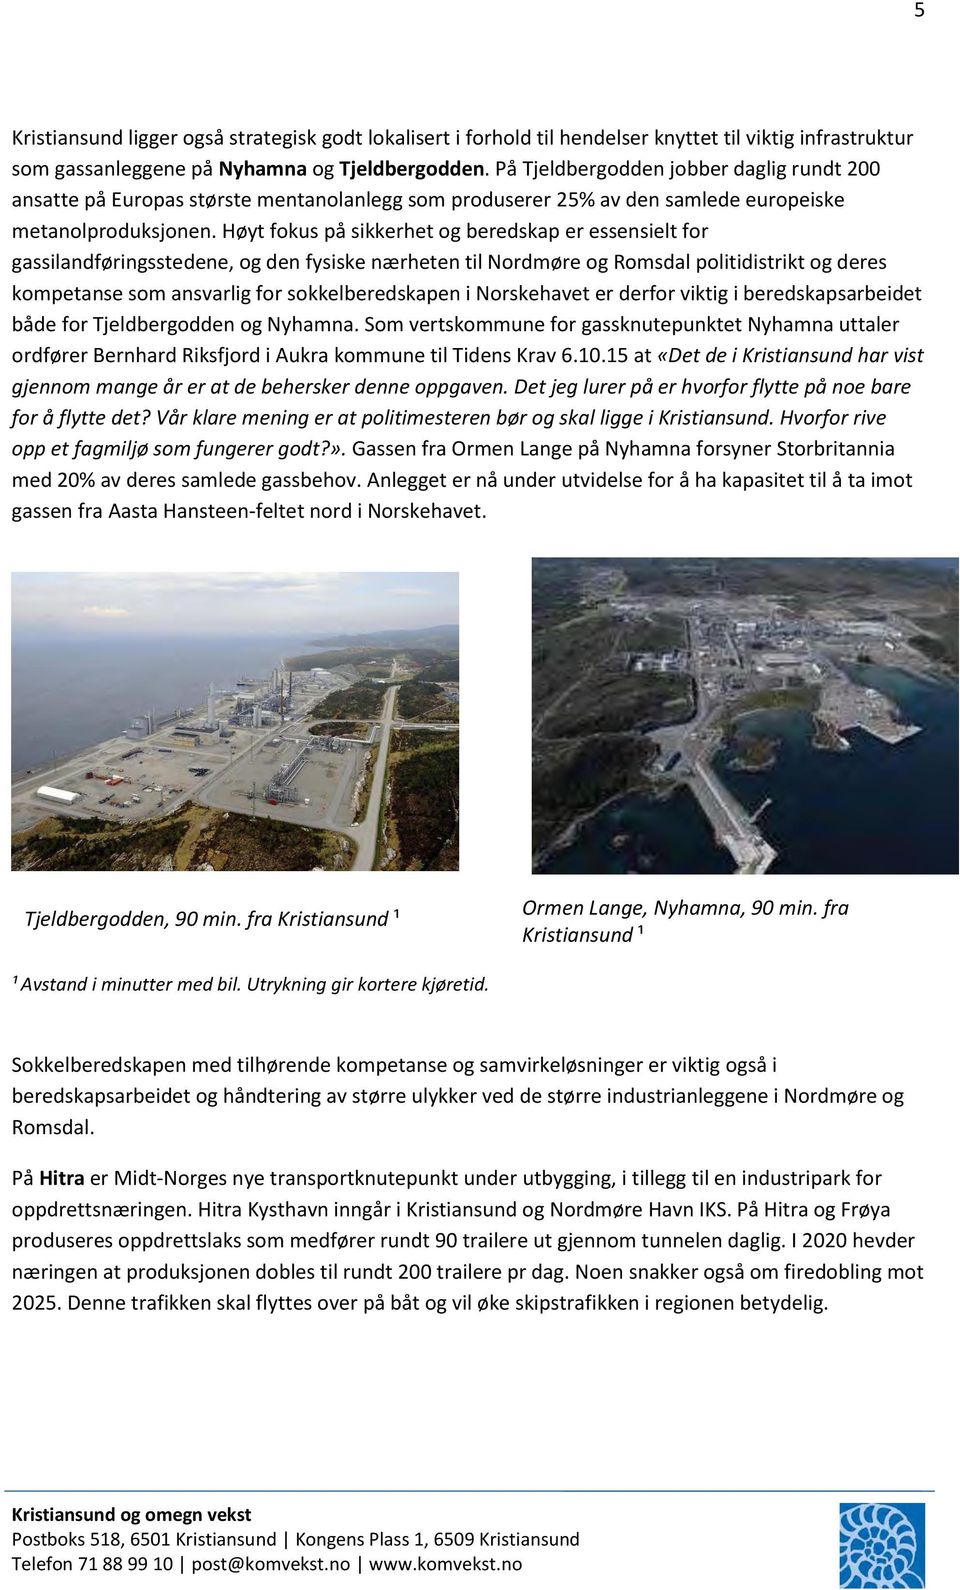 Høyt fokus på sikkerhet og beredskap er essensielt for gassilandføringsstedene, og den fysiske nærheten til Nordmøre og Romsdal politidistrikt og deres kompetanse som ansvarlig for sokkelberedskapen